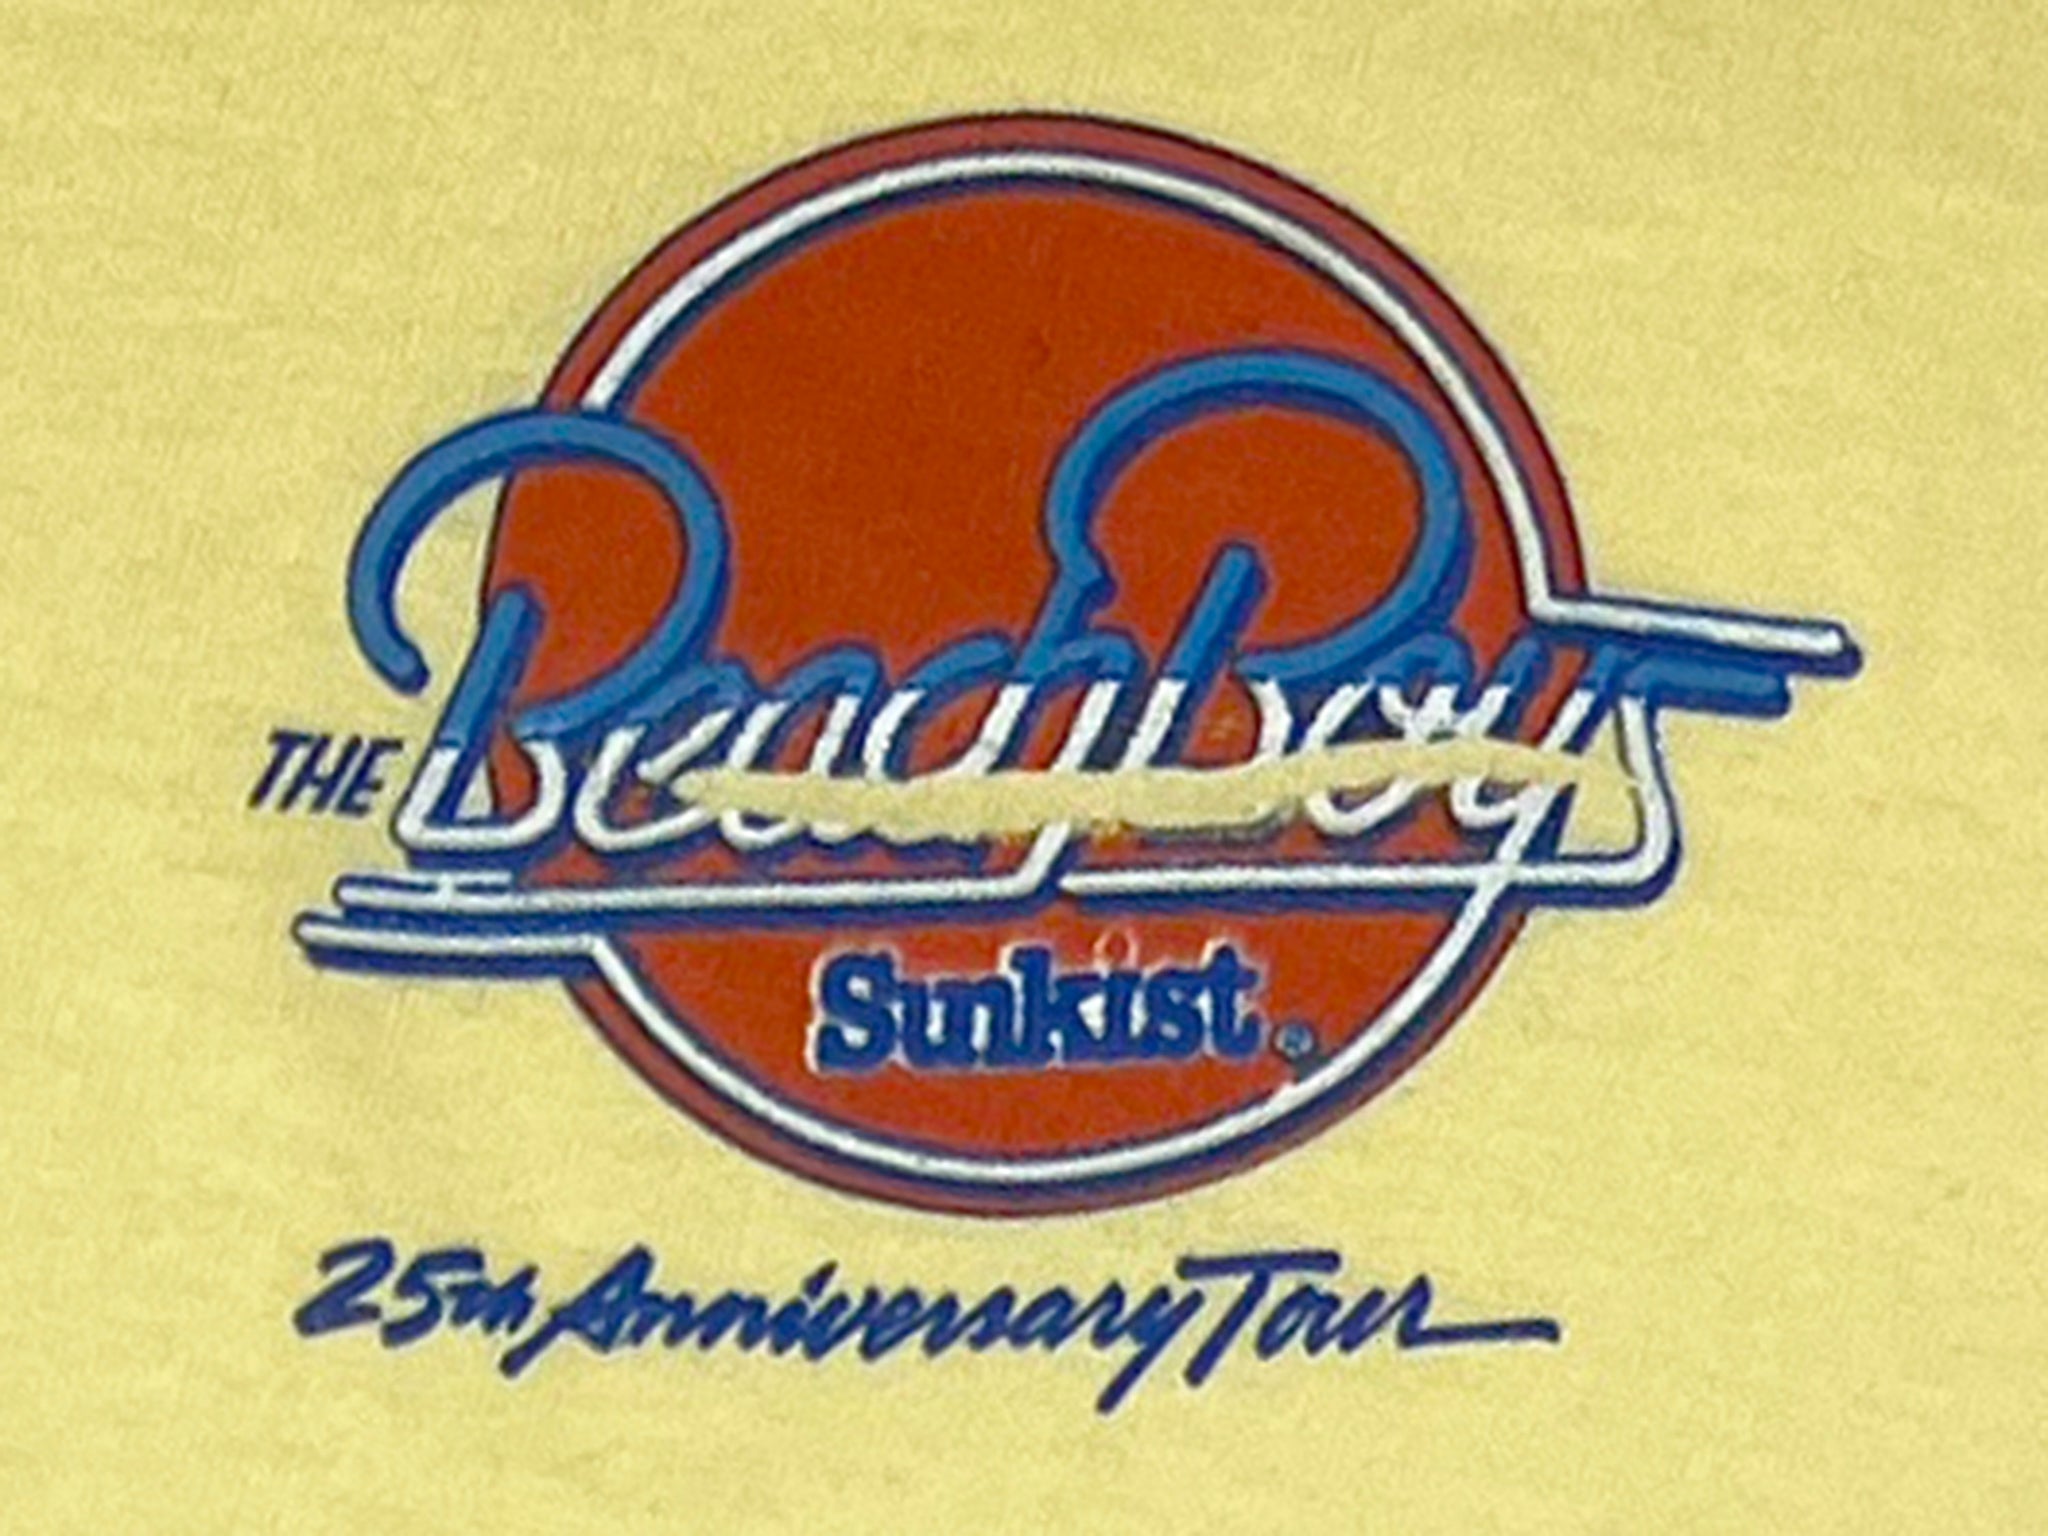 The Beach Boys 25th Anniversary L/S Shirt